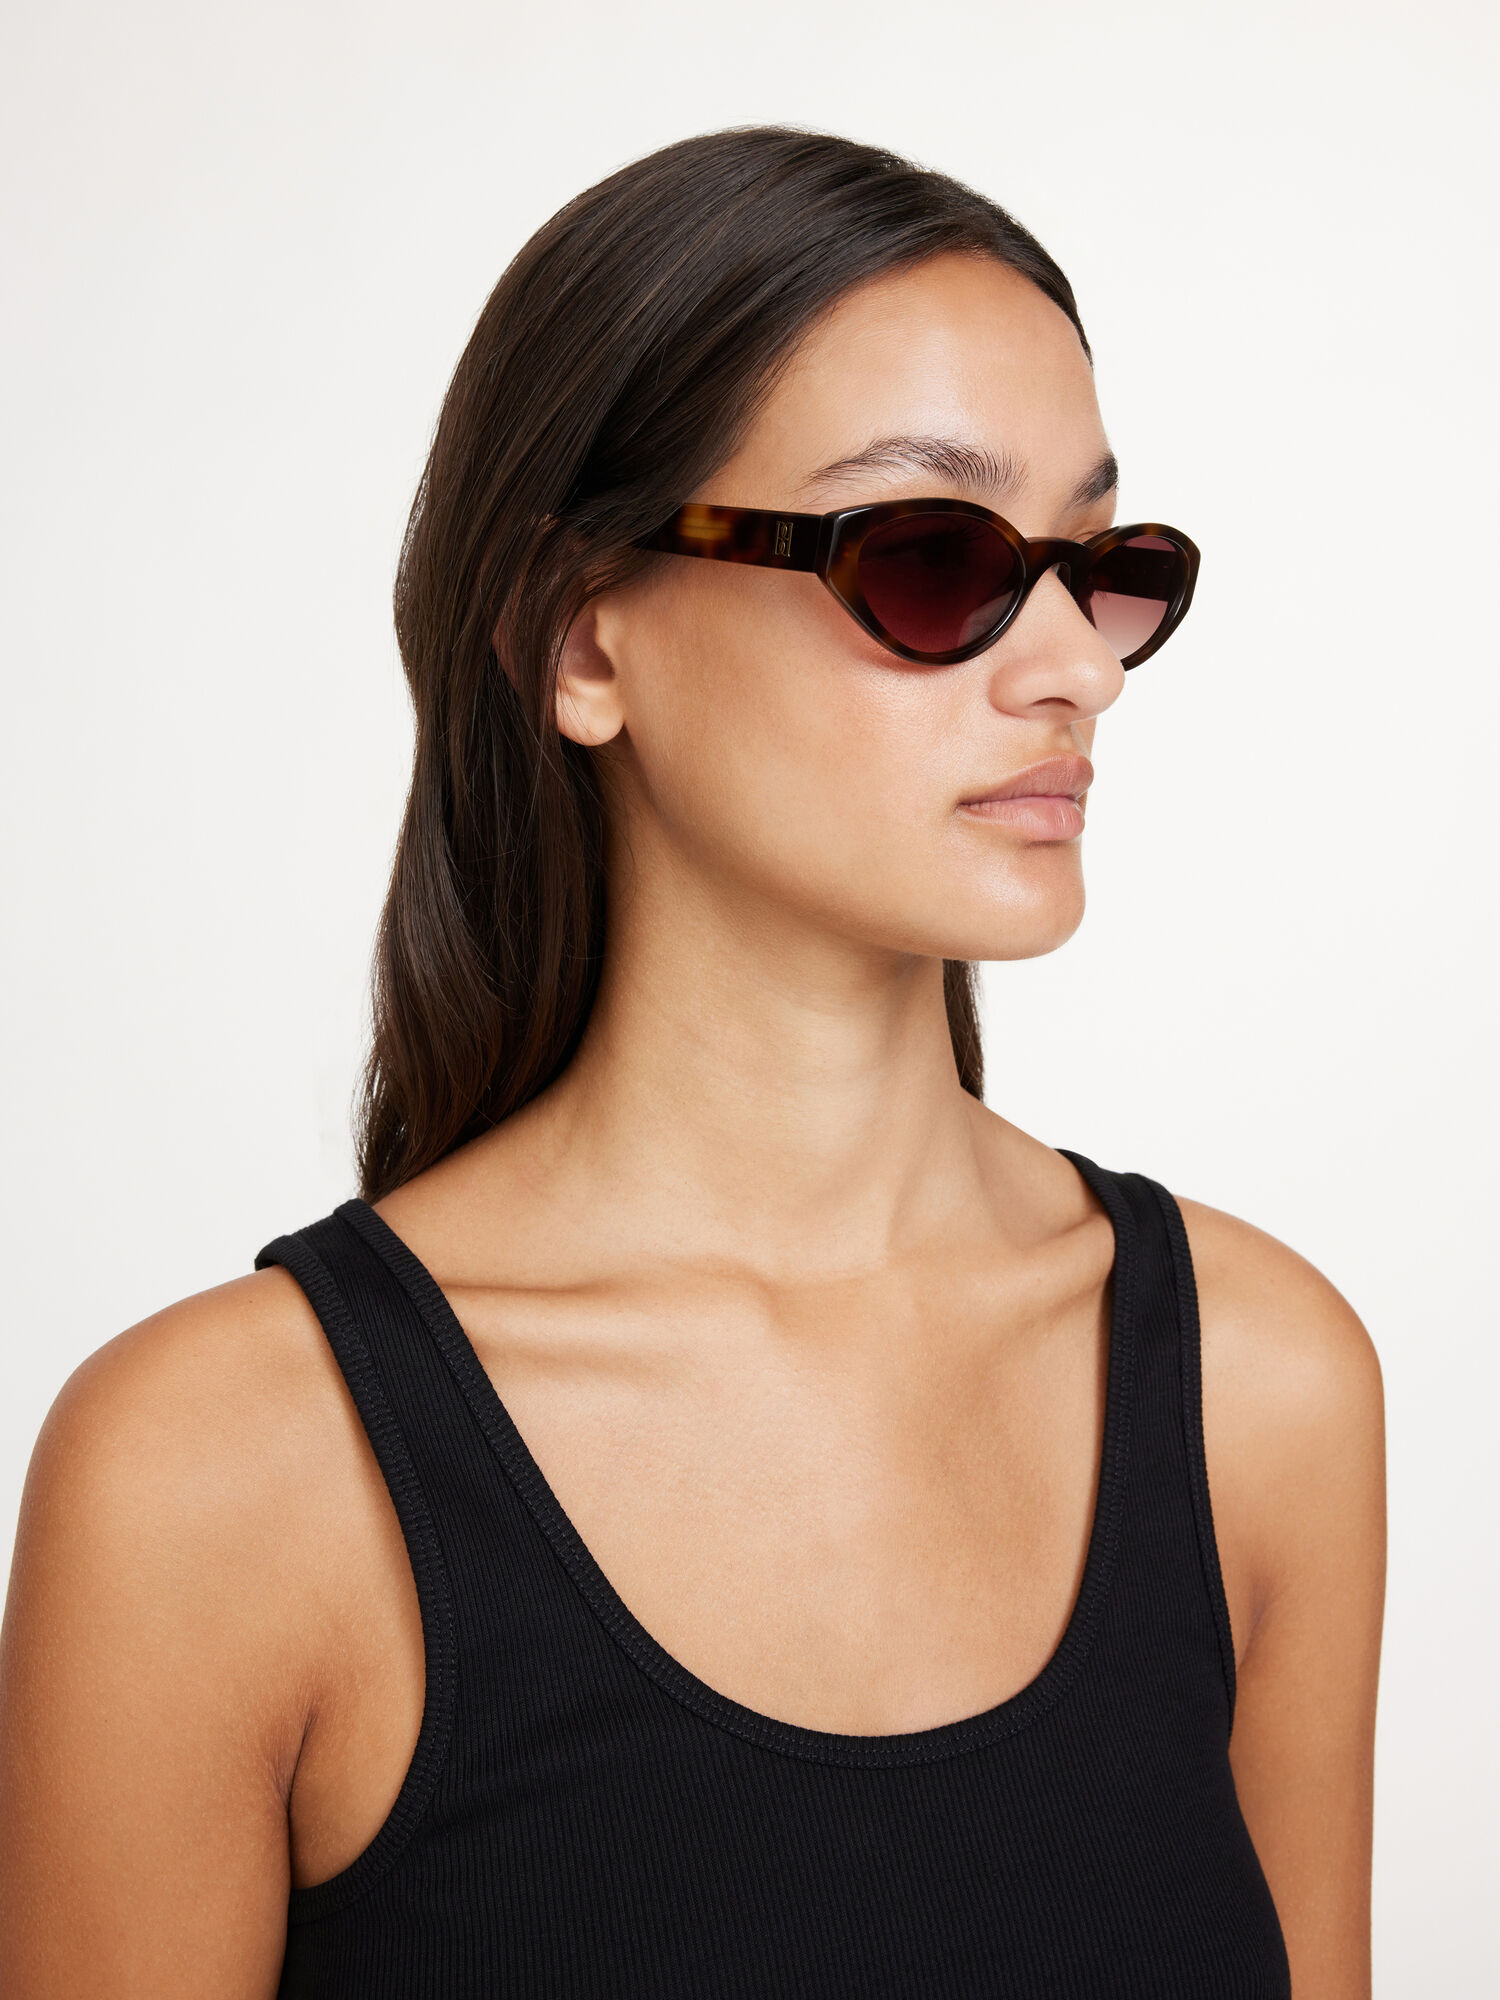 Myla solbriller